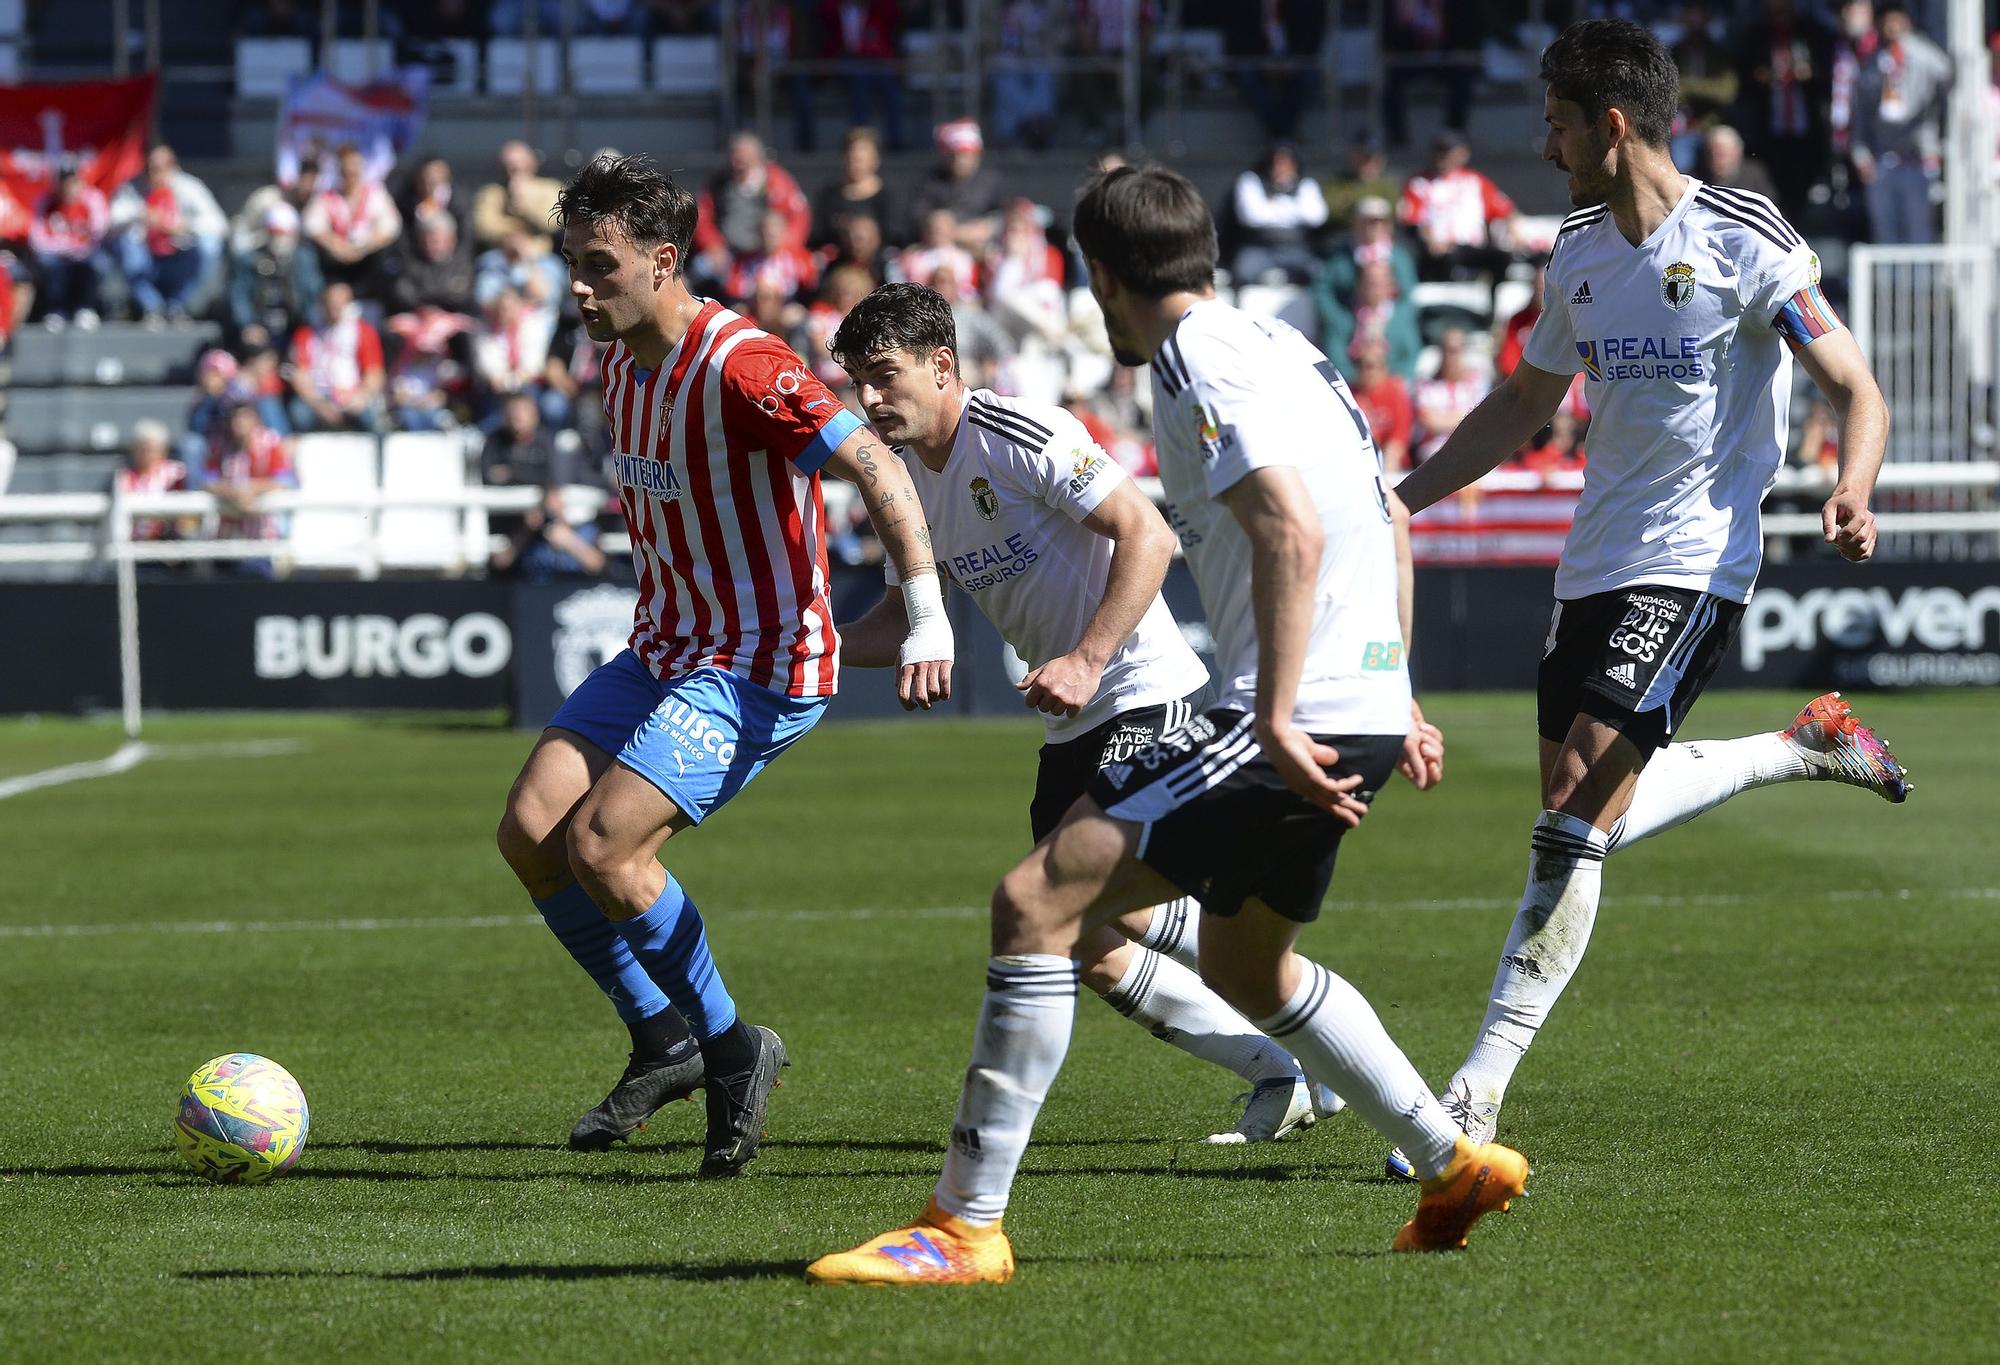 EN IMÁGENES: Así fue el encuentro entre el Burgos y el Sporting